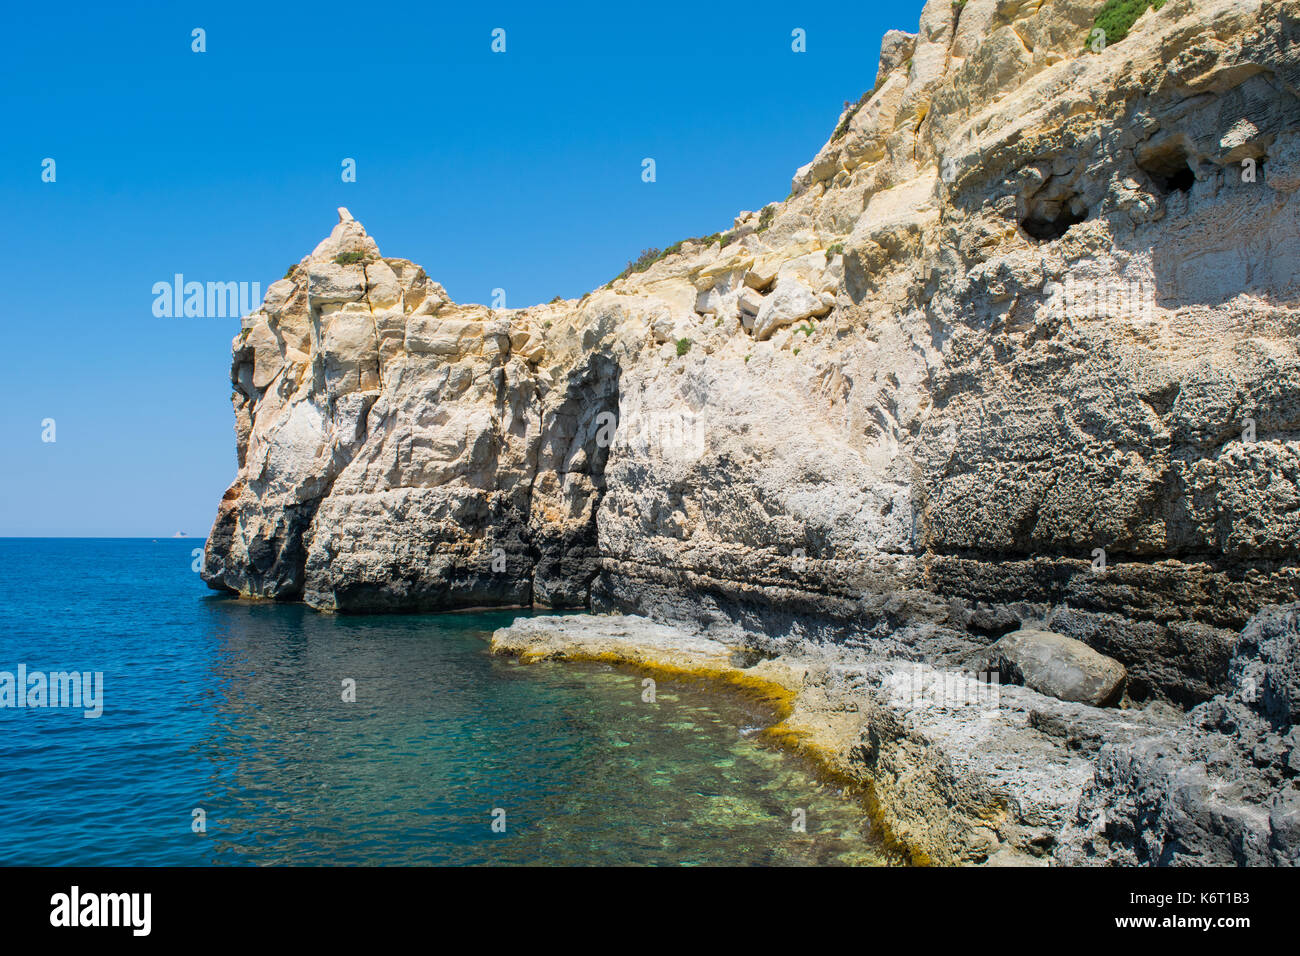 Eine Felswand entlang der maltesischen Küste, die Funktionen von Meer Erosion und Cliff Rezession. Wellenschnitt Plattform auf Meereshöhe und Risse und Felsbrocken. Stockfoto